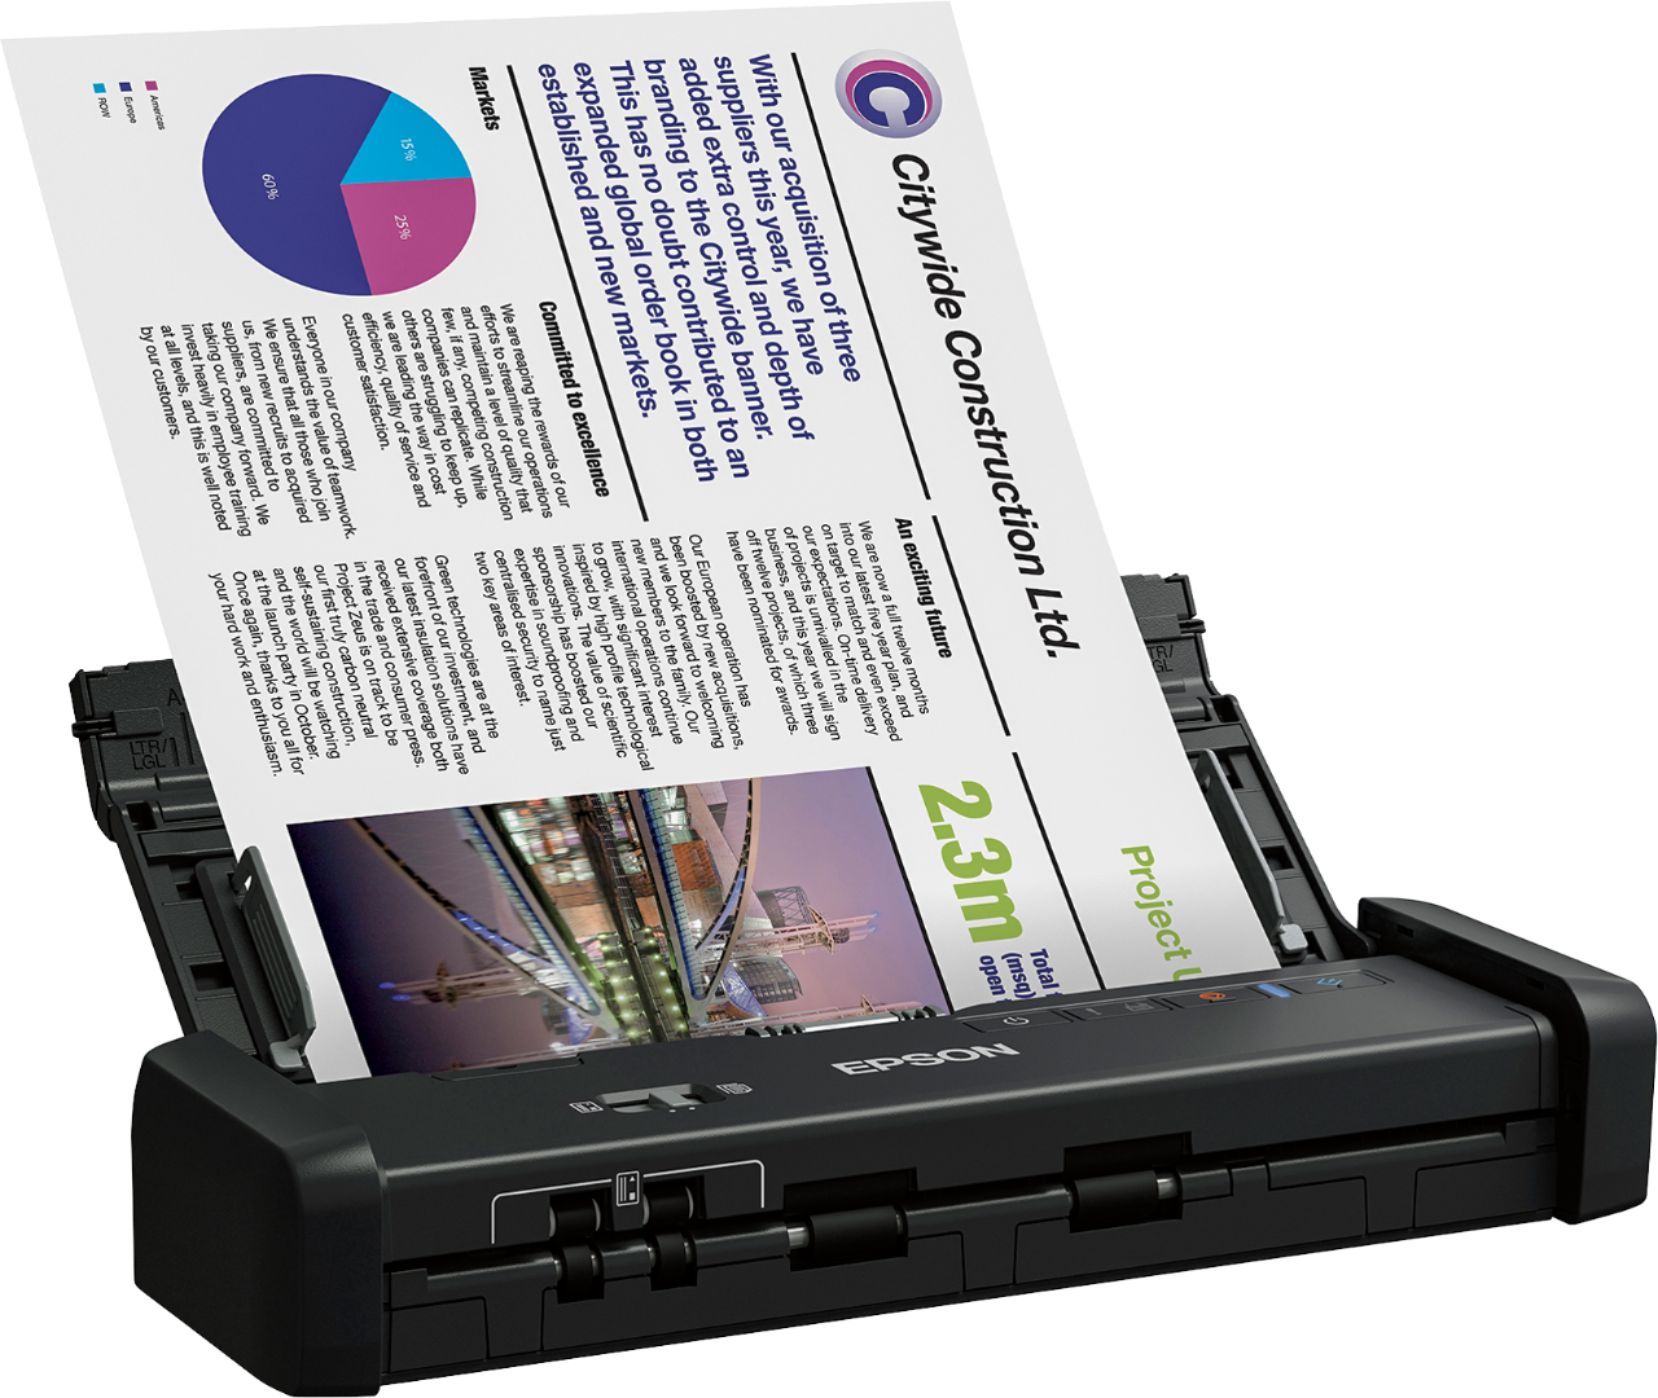 Epson - WorkForce ES-200 Duplex Mobile Document Scanner - Black